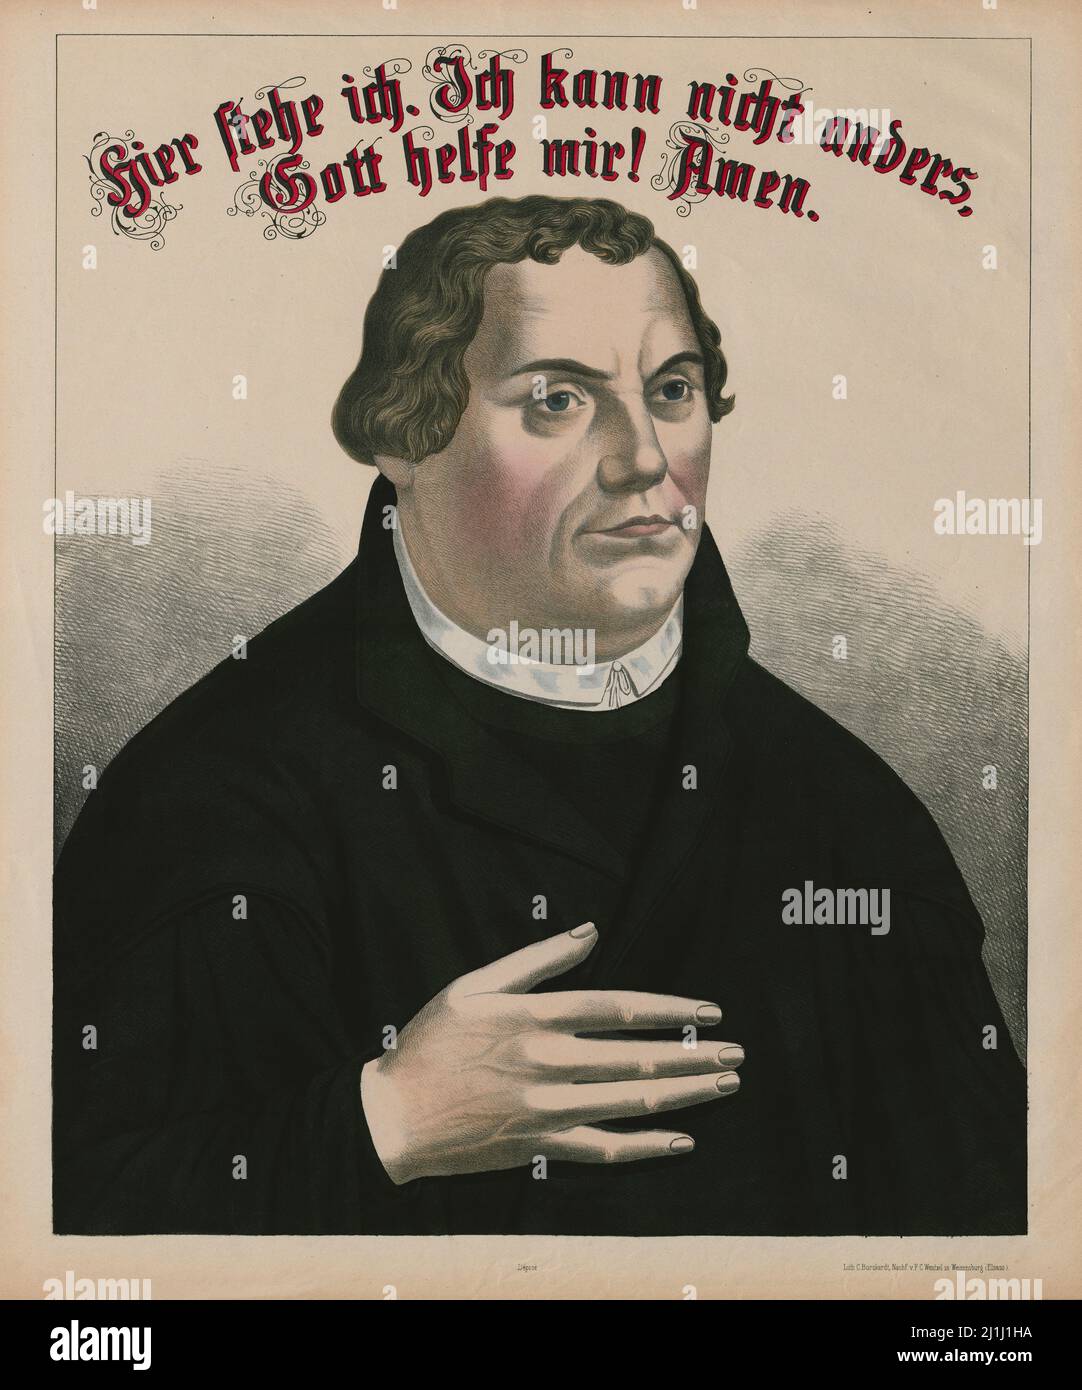 Incisione di Martin Lutero: Qui mi trovo. Non posso farne a meno. Dio mi aiuta! Amen, 1890 Foto Stock